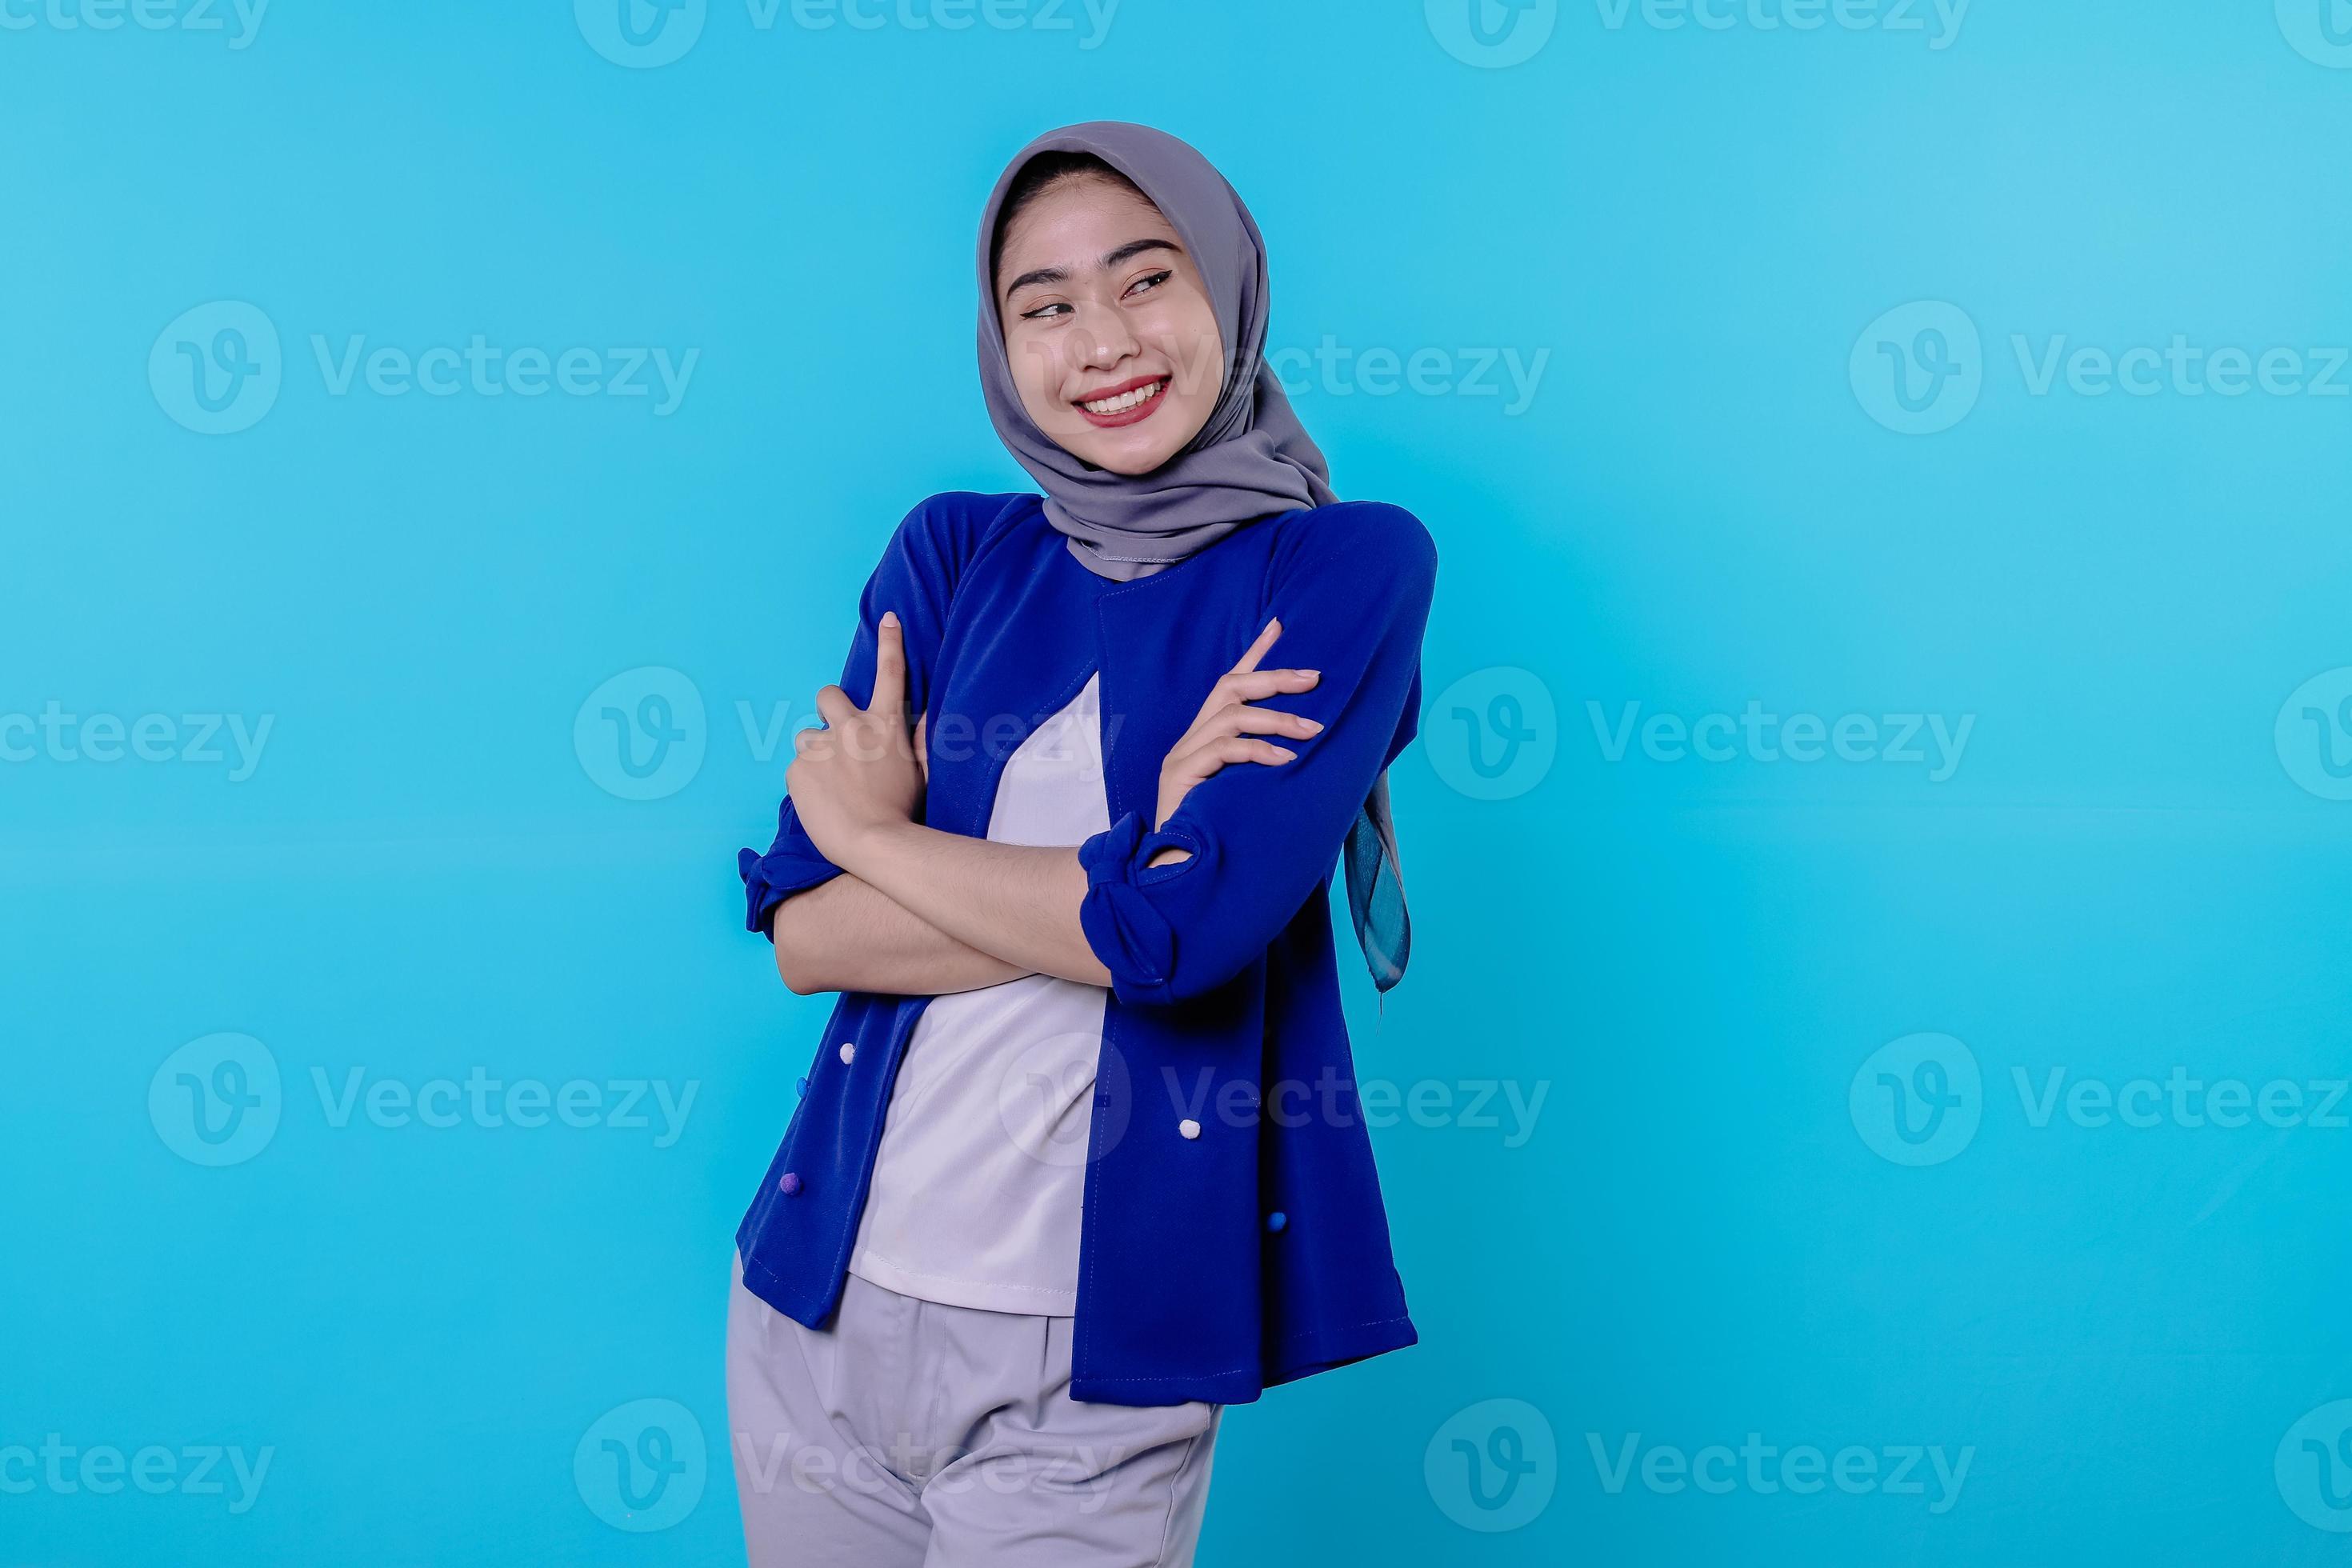 Optimistische charmante attraktive junge Frau mit süßem Lächeln freudig mit schönem weißem Lächeln auf hellblauem Hintergrund foto